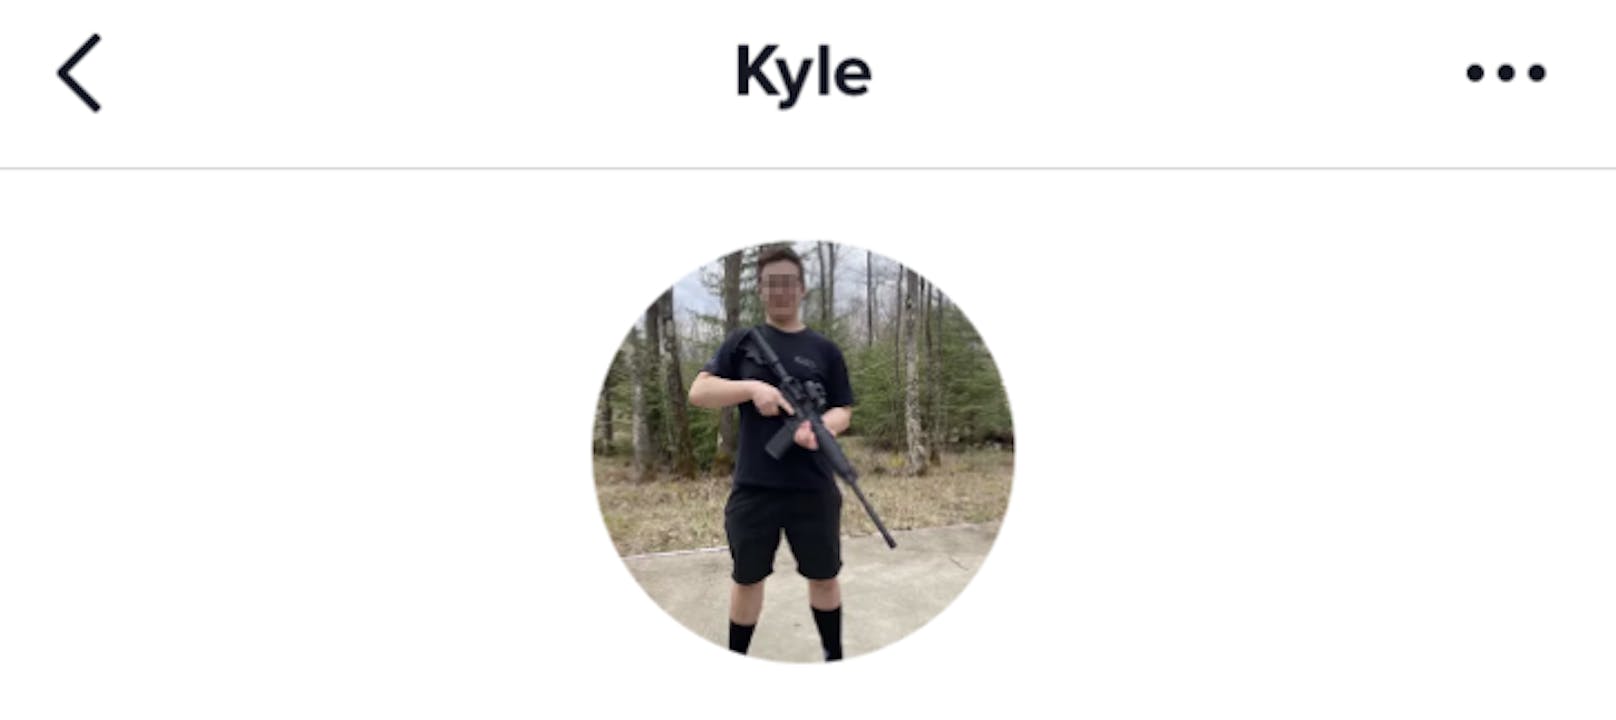 Kyles TikTok Profilbild zeigt ihn mit dem Gewehr.